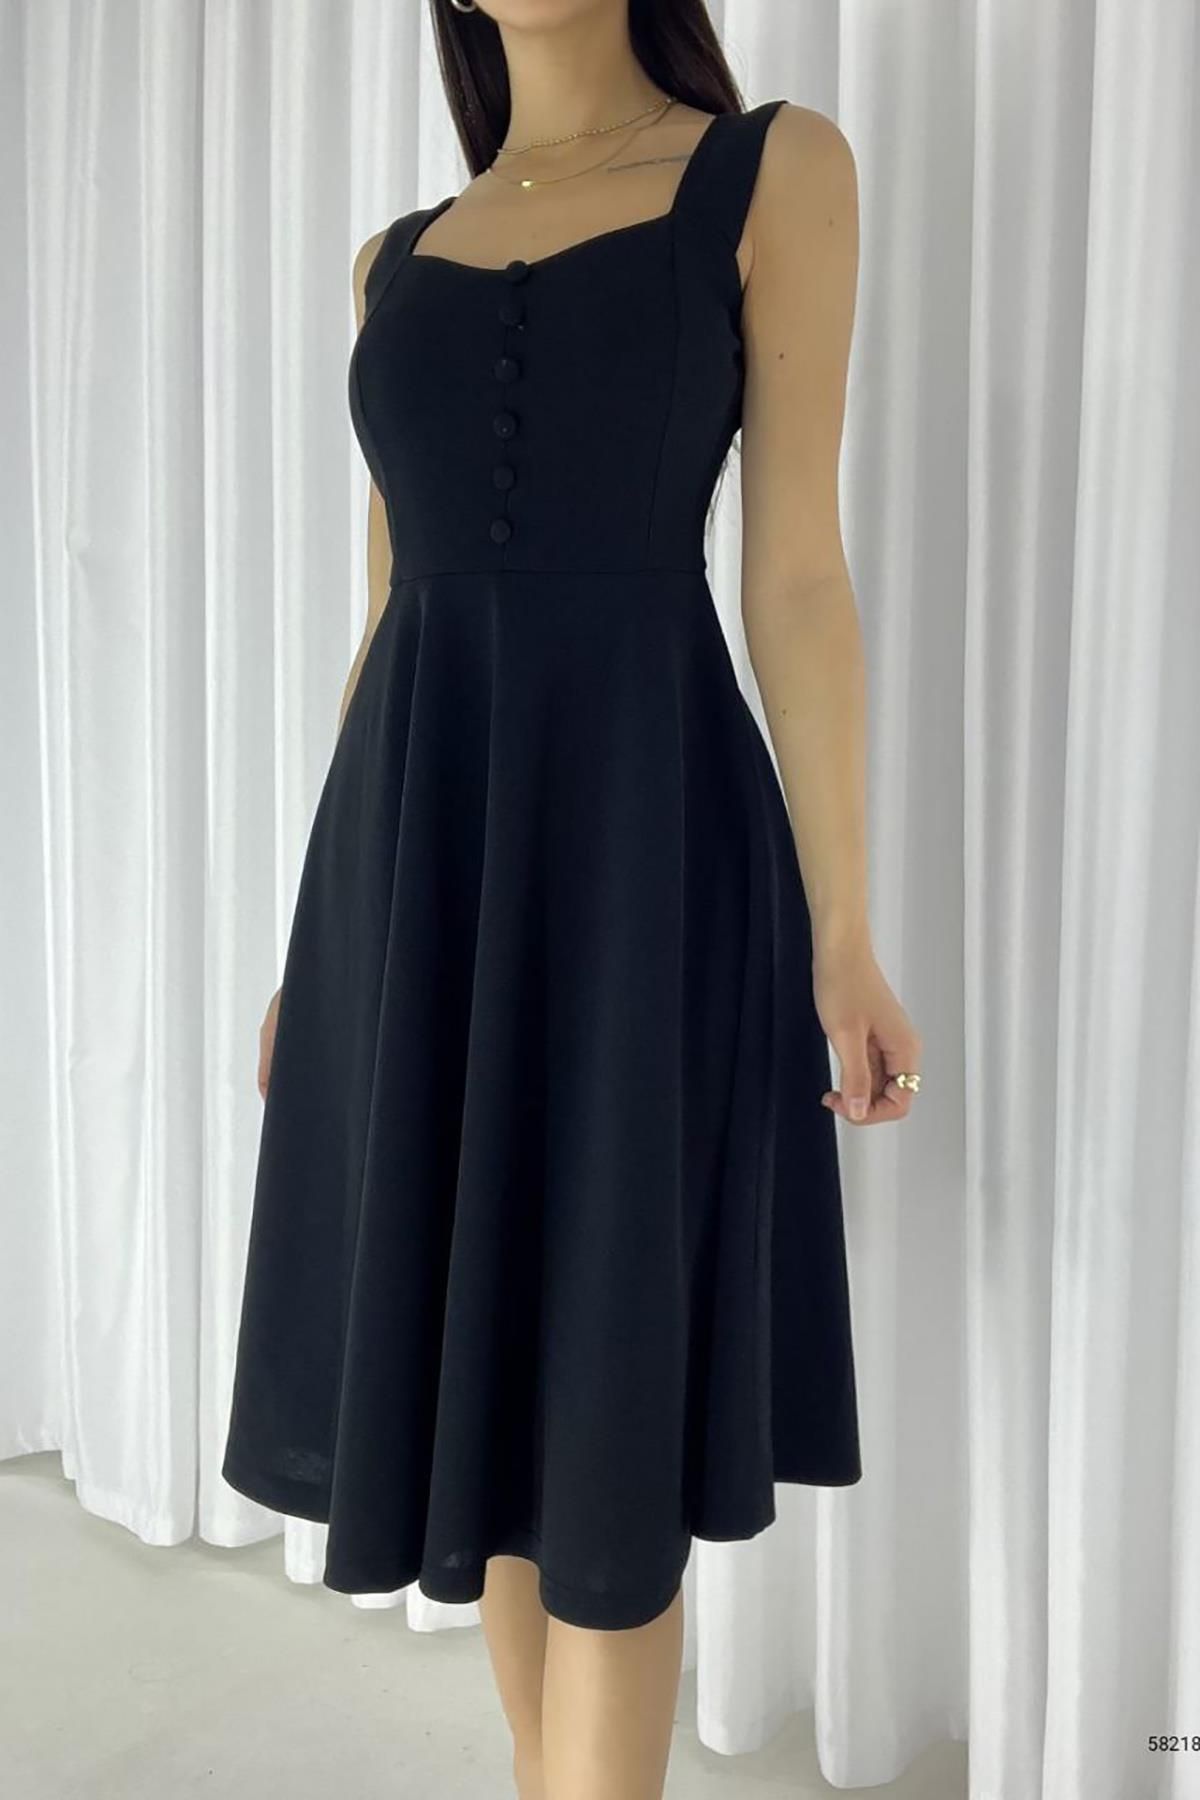 Deafox Siyah Ithal Krep Kumaş Kalın Askılı Düğme Detaylı Elbise